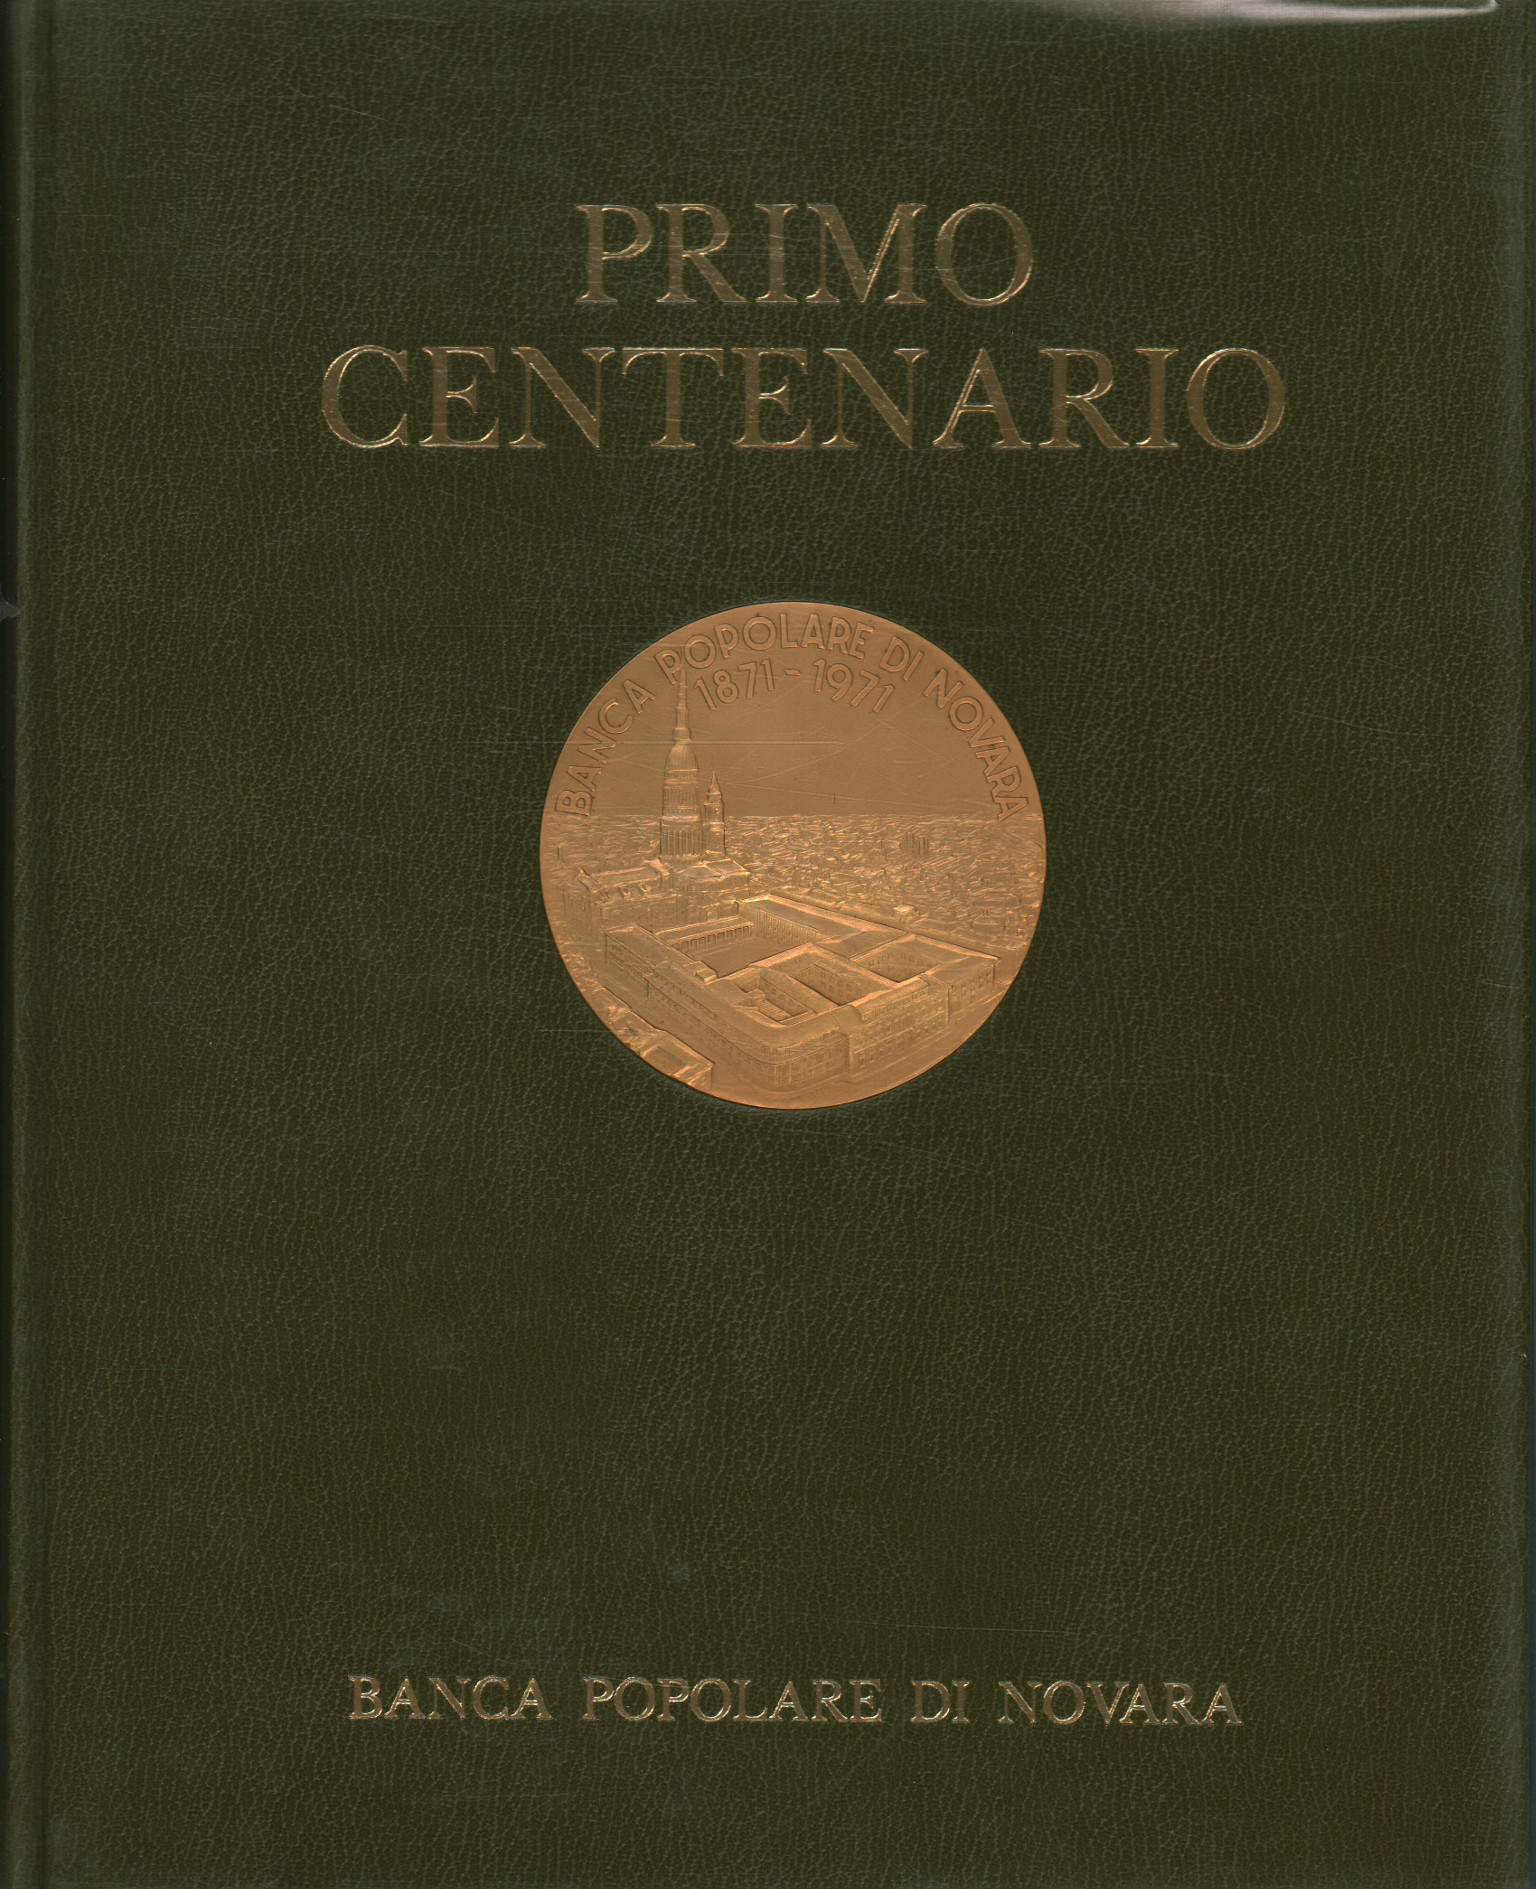 First centenary of Banca Popolare di Novar